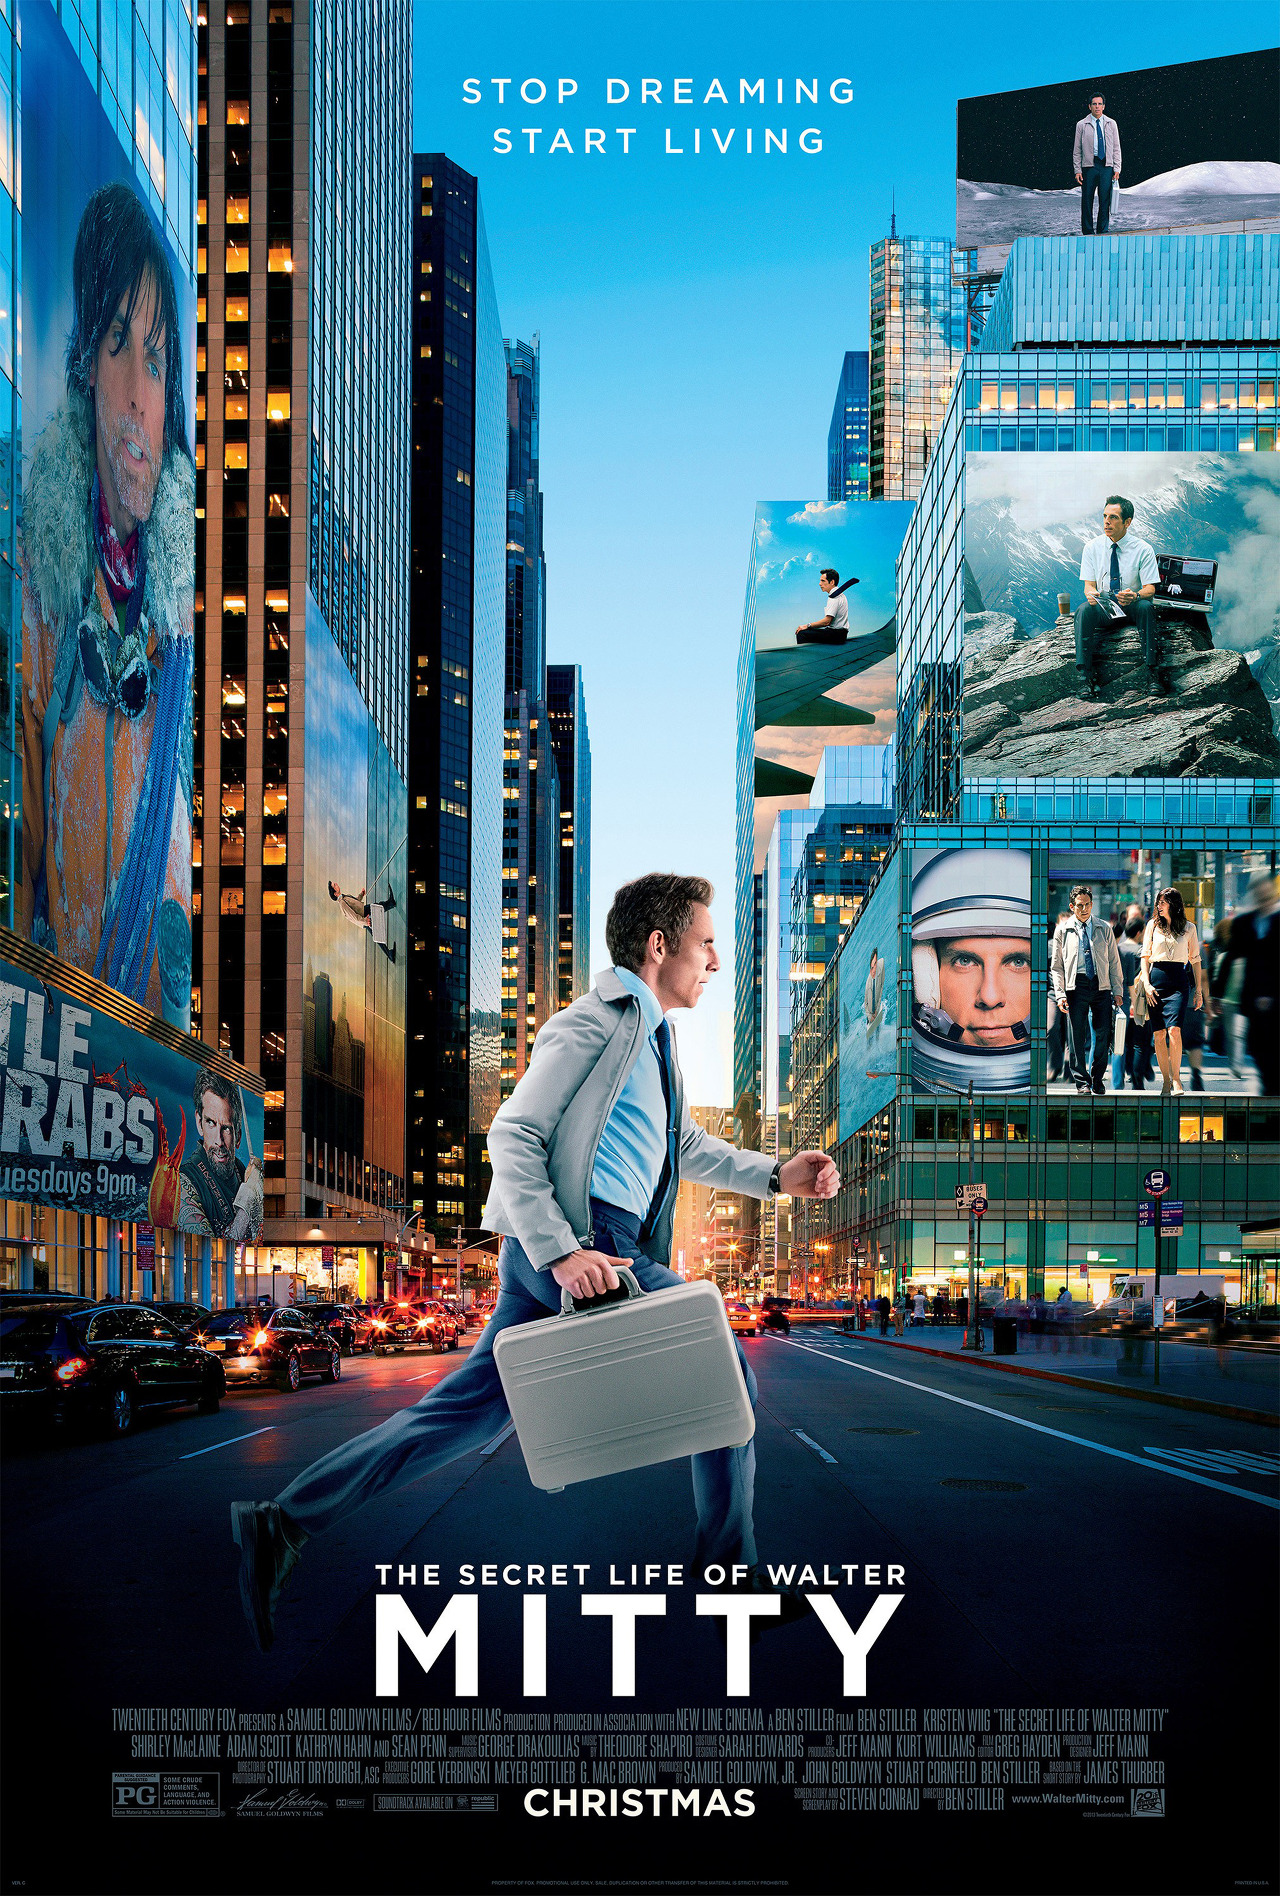 주인공 월터가 도시를 걷는 모습의 영화 &#39;월터의 상상은 현실이 된다&#39; 포스터 사진이다.